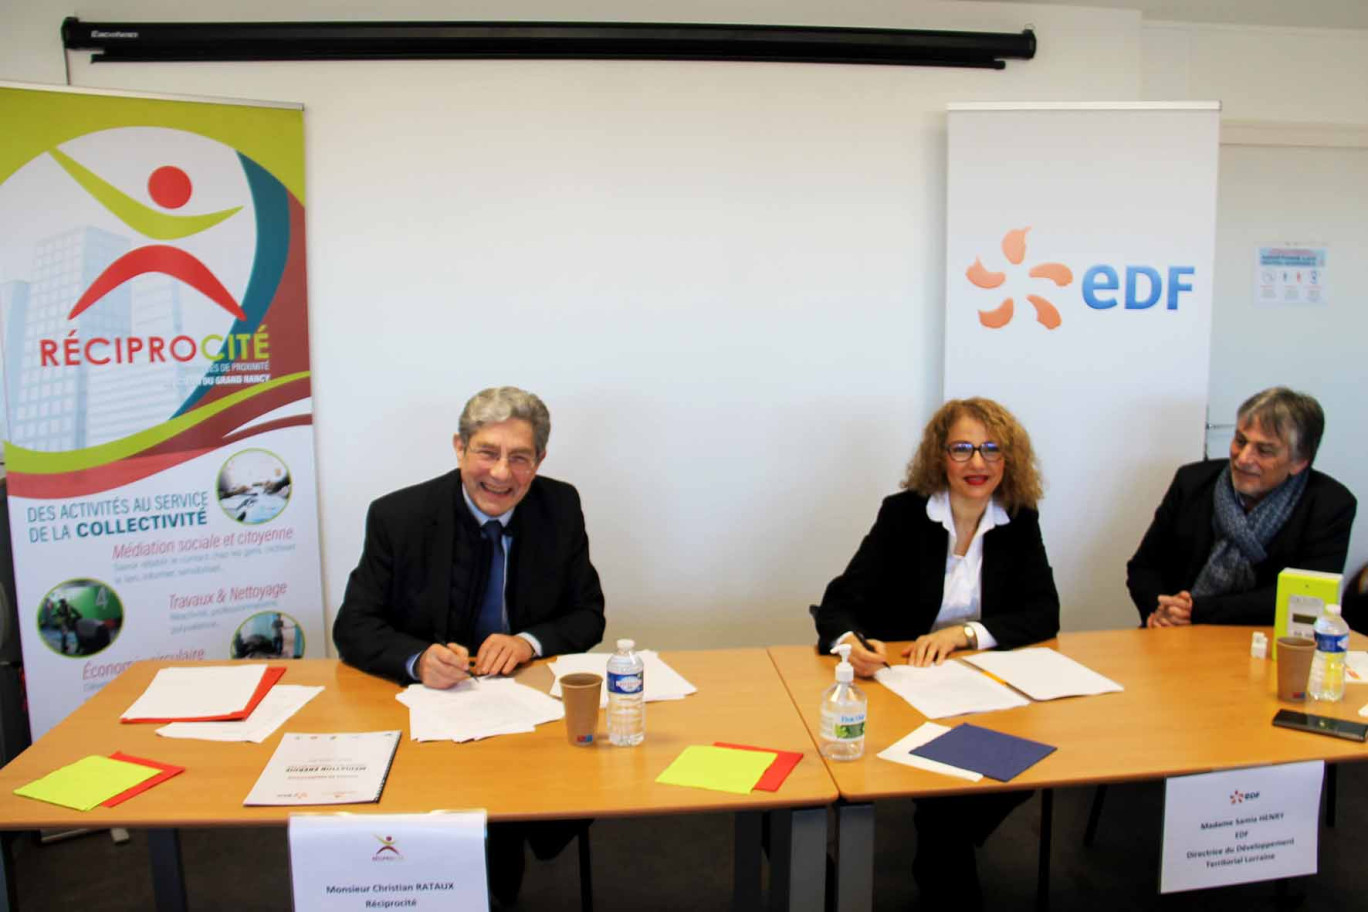 Christian Rataux, président de Réciprocité et Samia Henry, la directrice du développement territorial d’EDF Lorraine, viennent de renouveler leur partenariat pour lutter contre la précarité énergétique. 